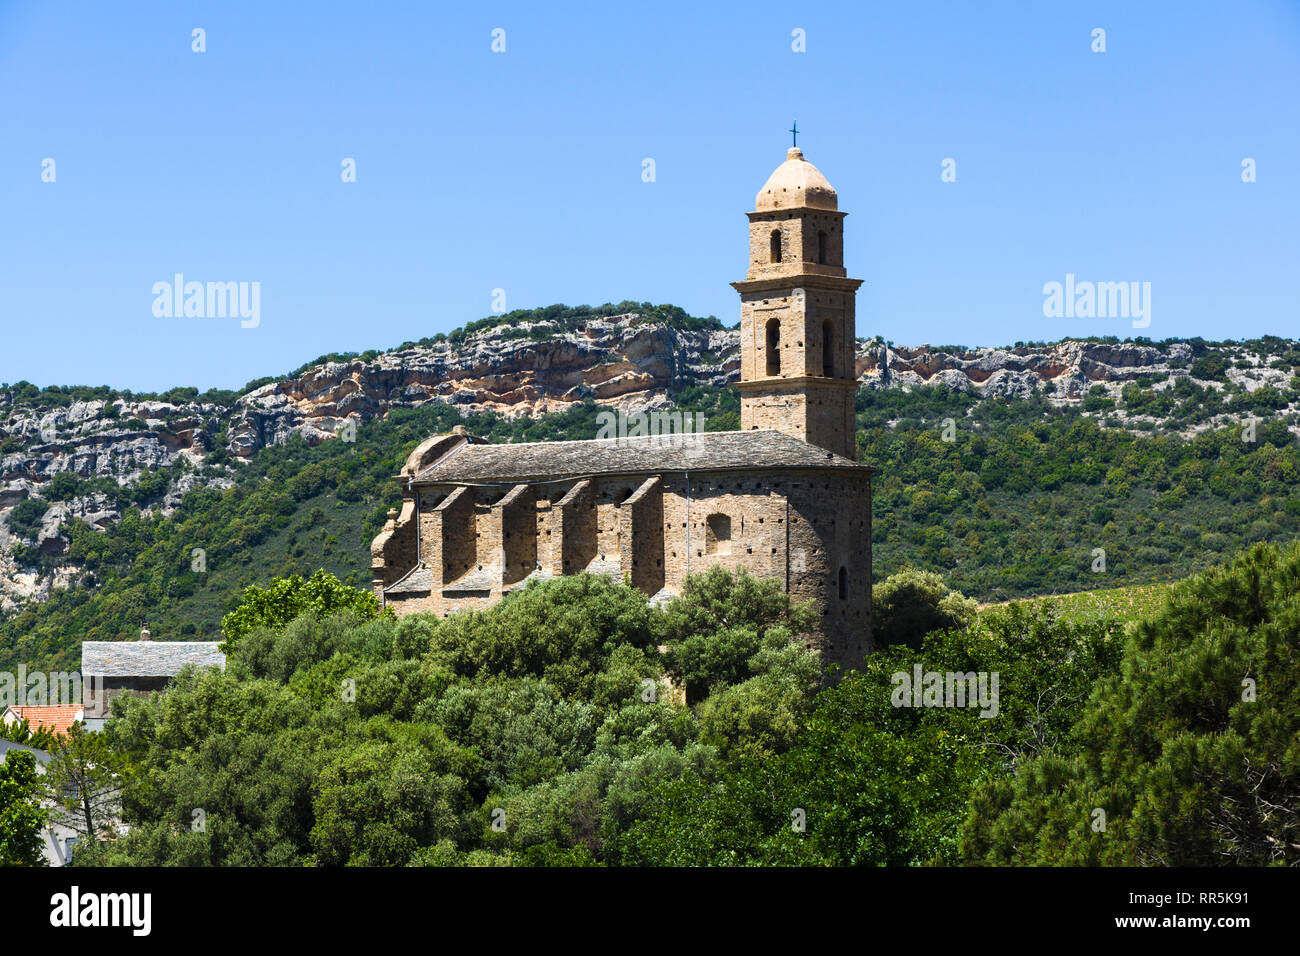 San Martinu (Saint Martin's) Église, Patrimonio, Cap Corse, Corse, France Banque D'Images